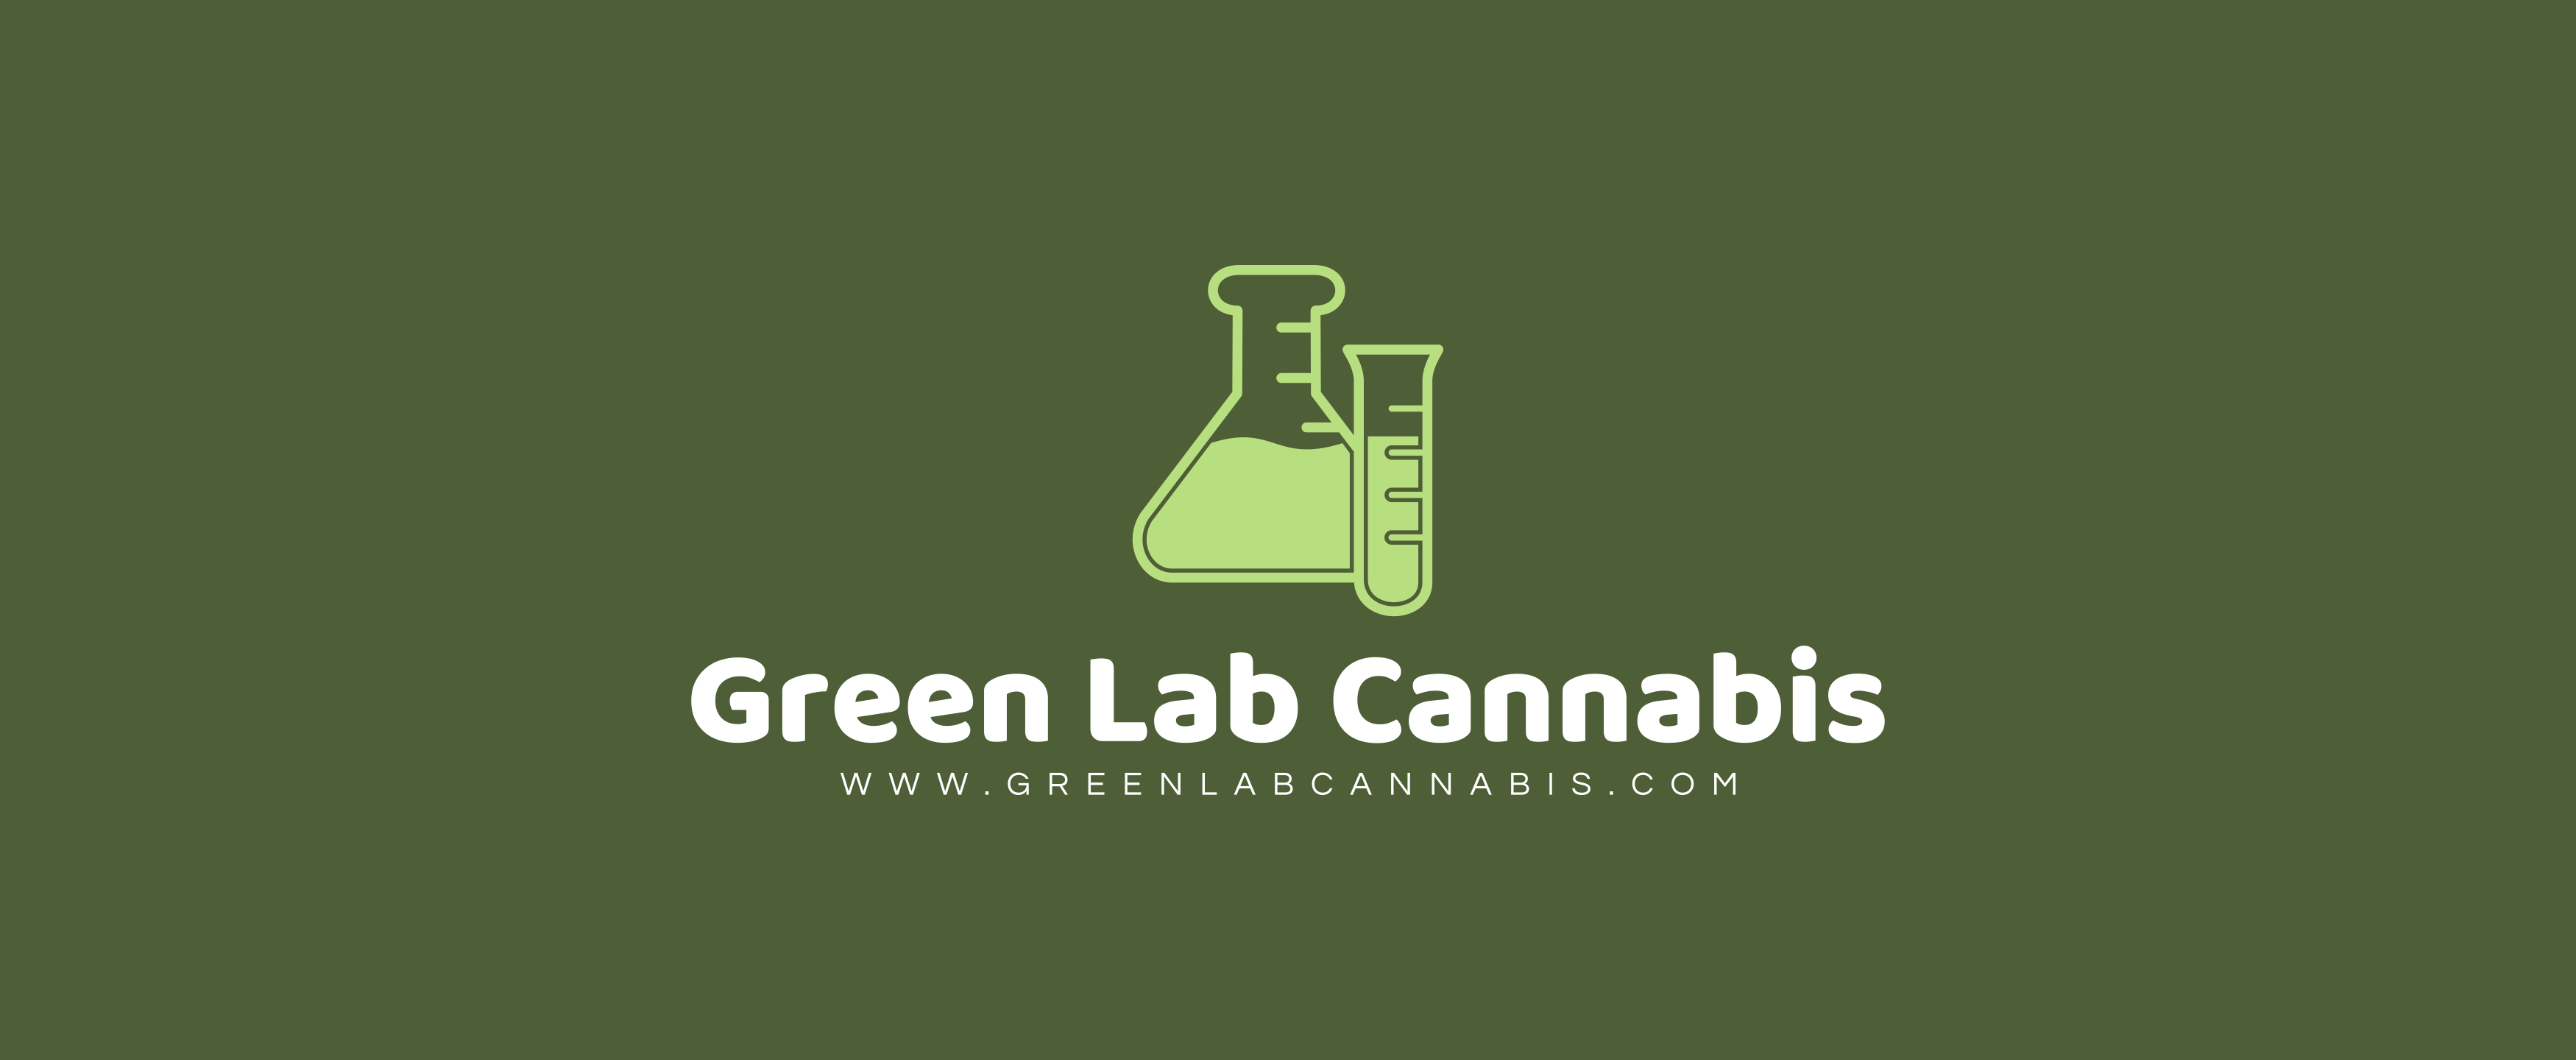 Green Lab Cannabis